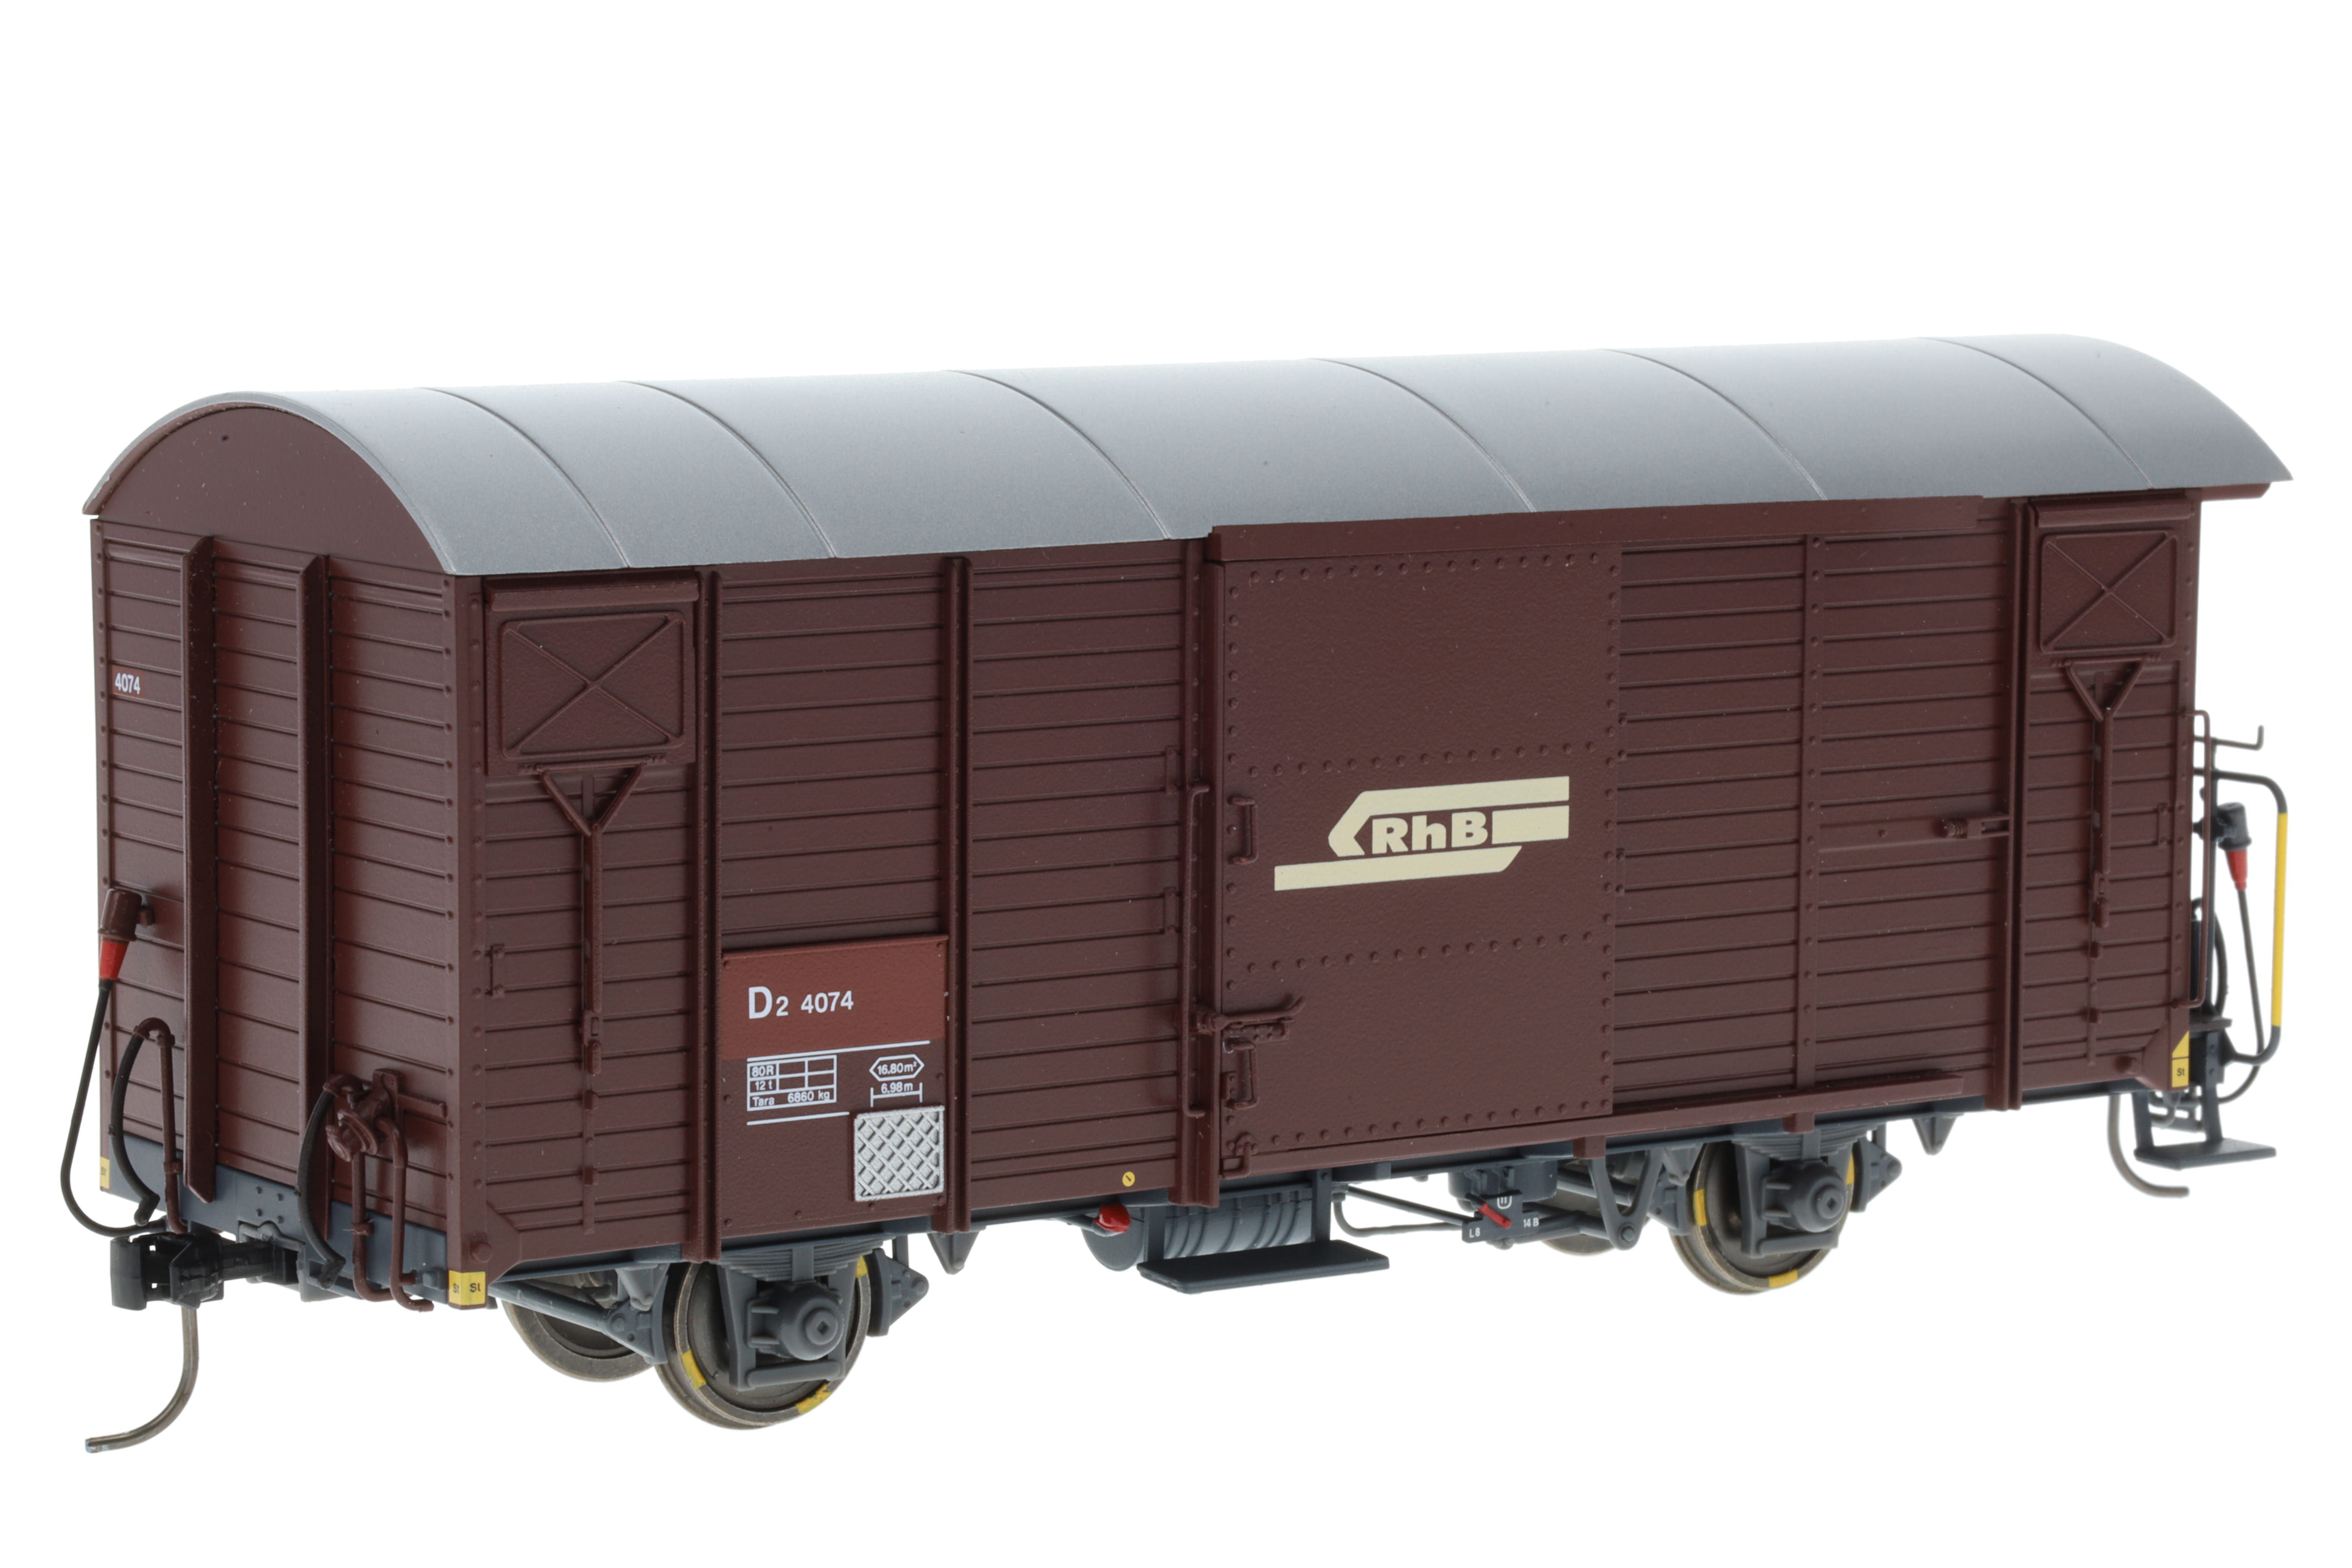 0m RhB D2 4074 Behelfspack-Wg braun, 2-achsiger gedeckter Güterwagen